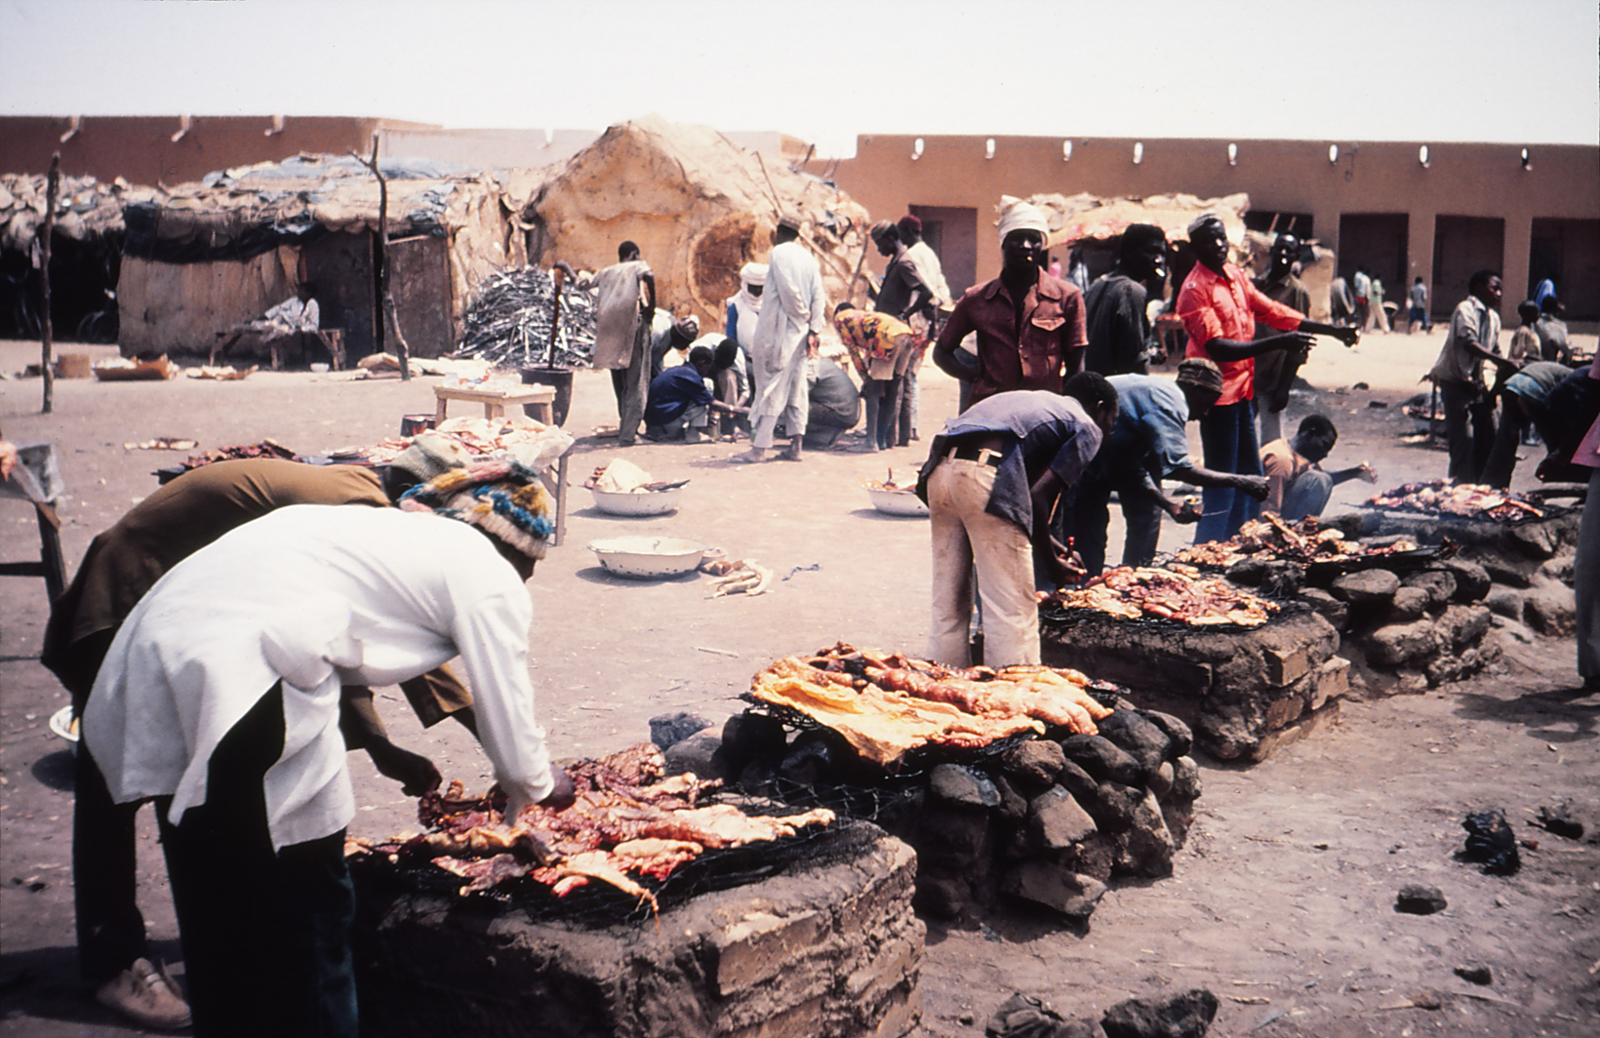 Grillplatz in Agadez, Niger.